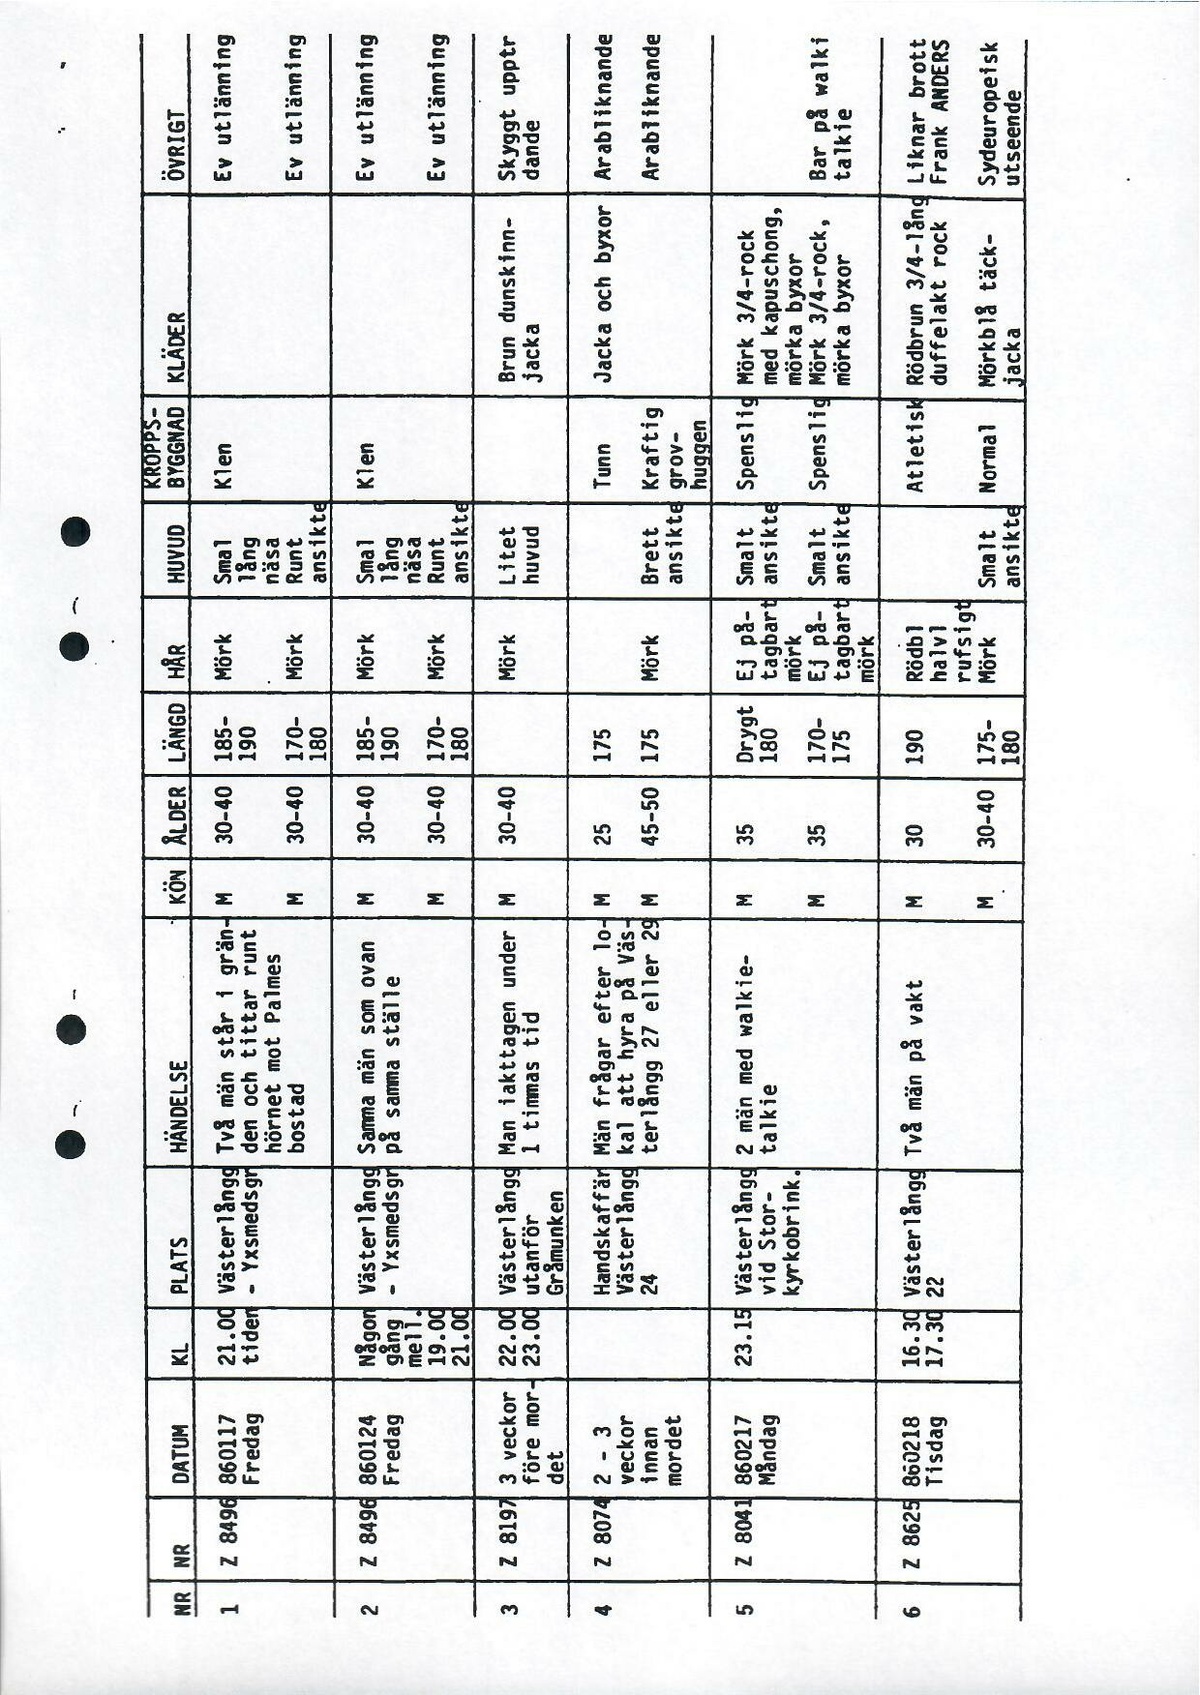 Pol-1986-04-24 A11544-00 Sammanställning över tips tablå.pdf